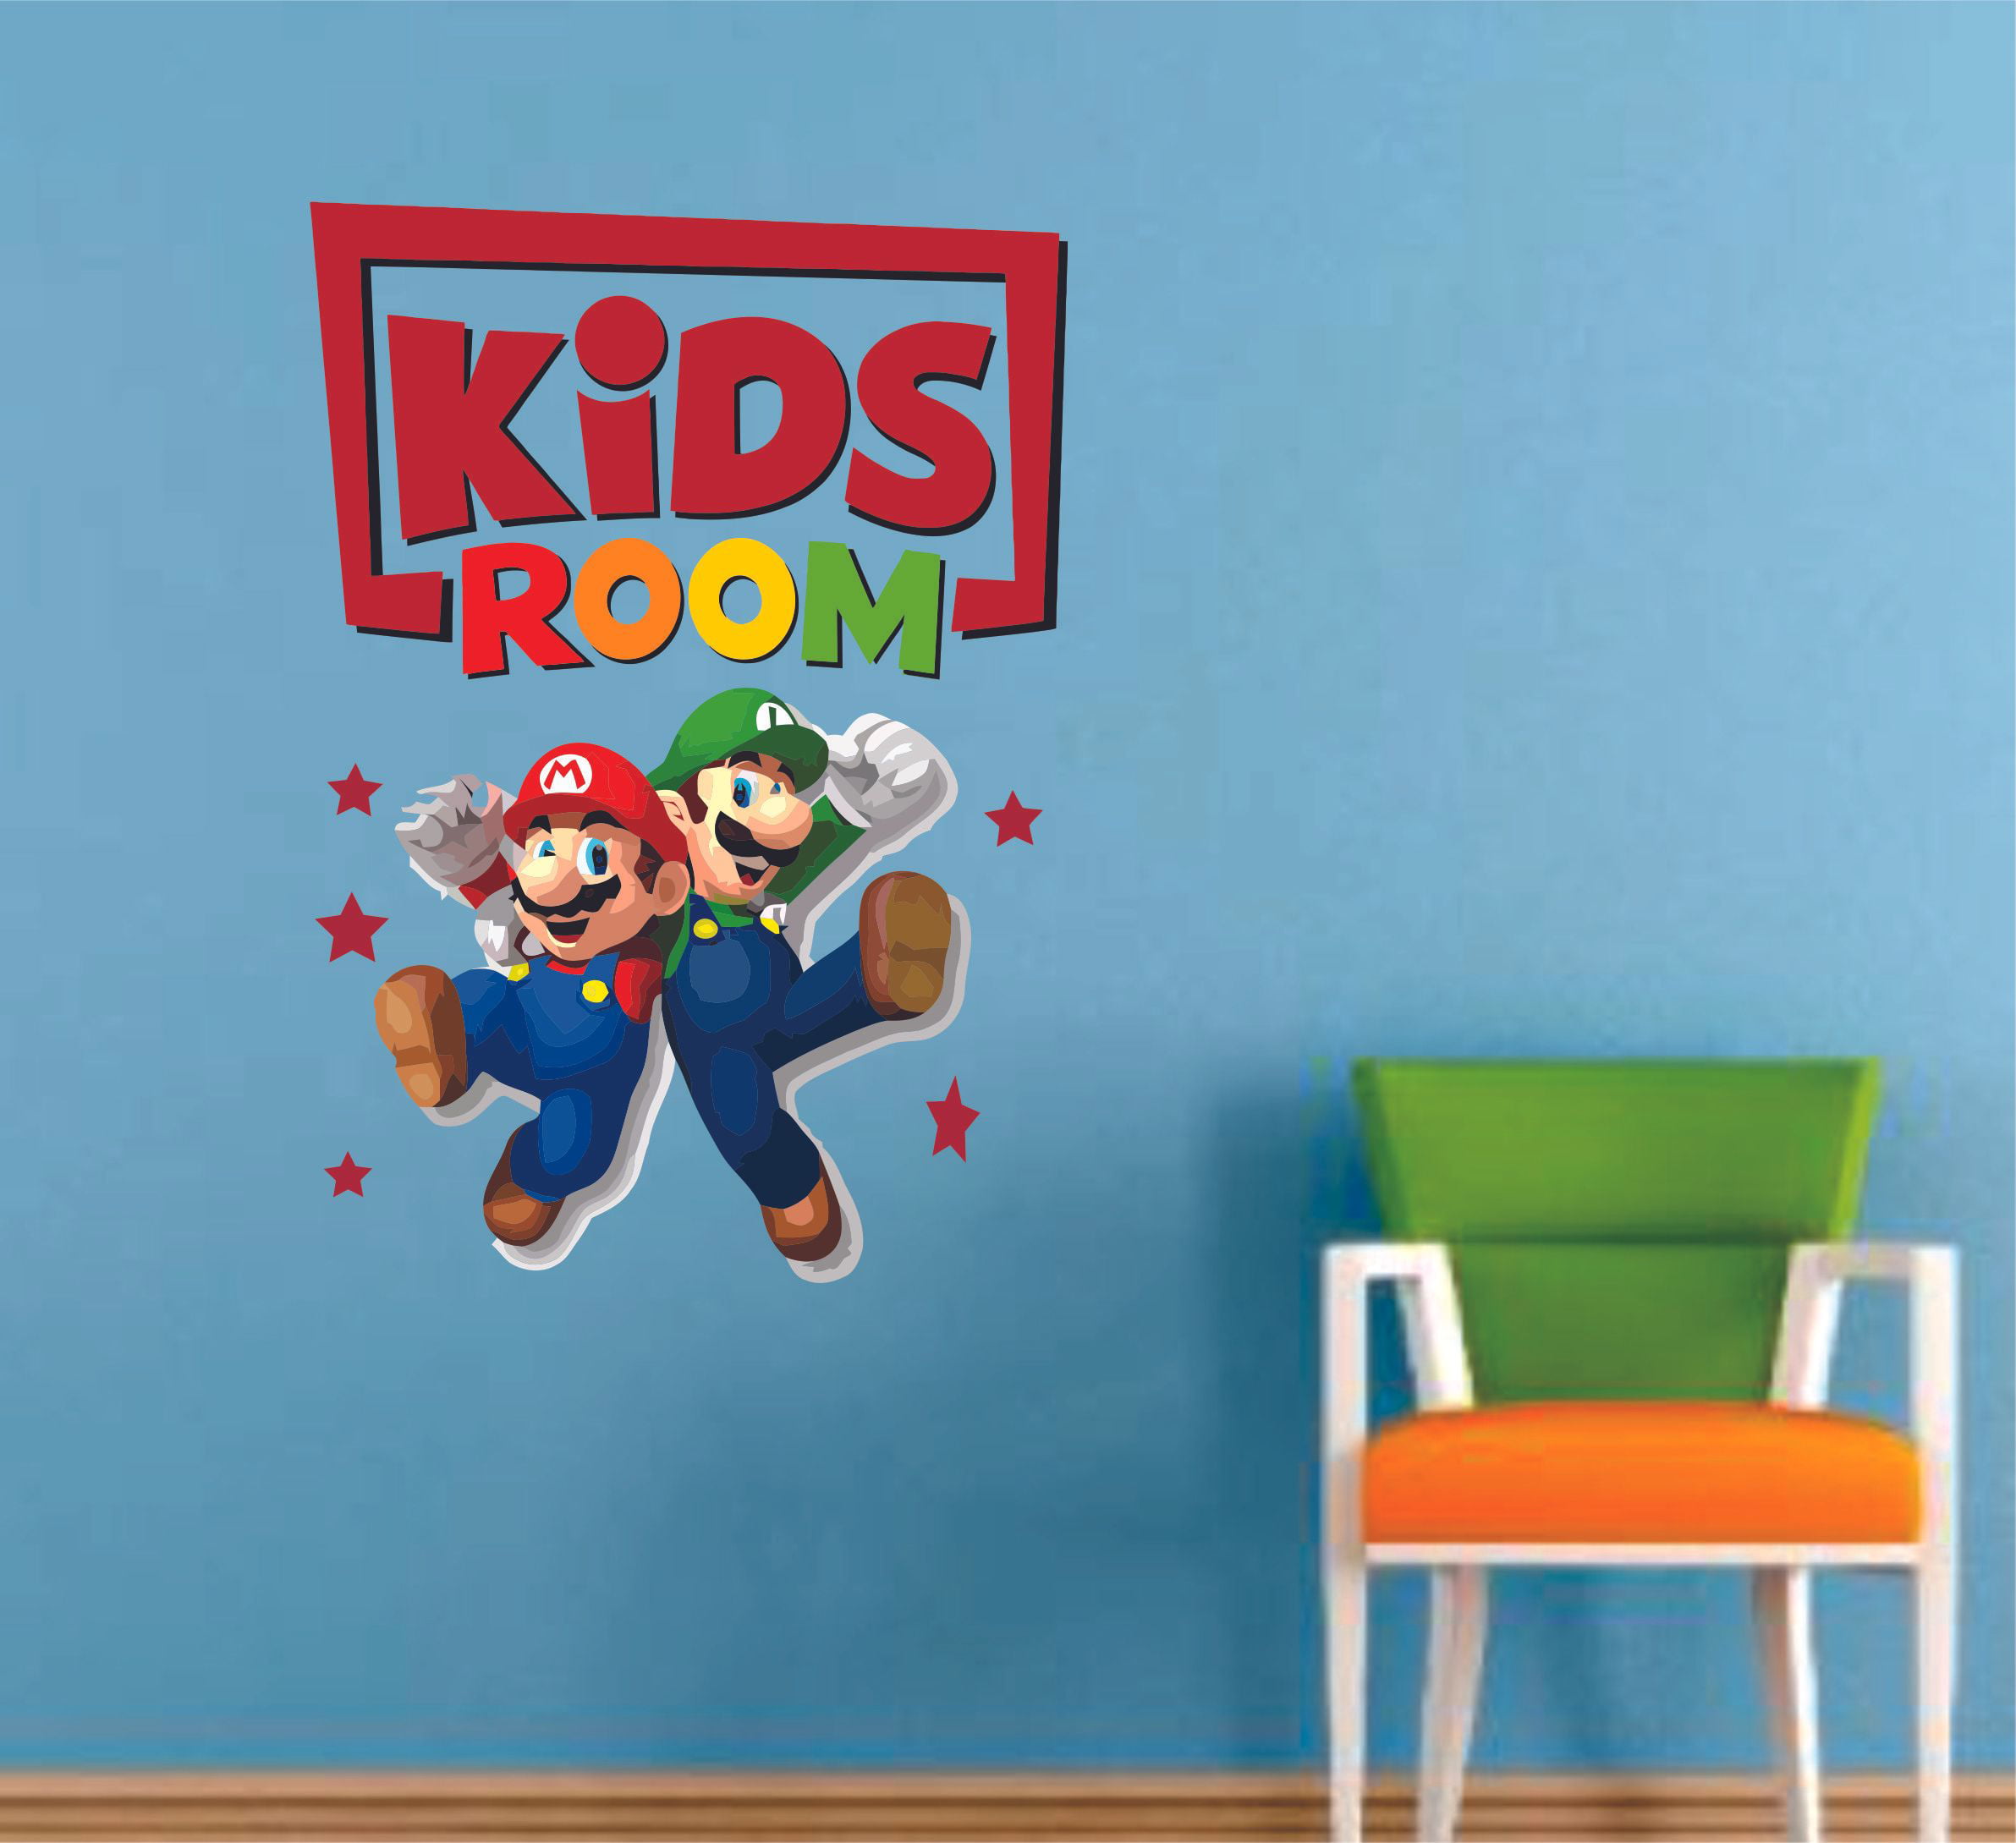 LUIGI RUN Super Mario Bros Decal Removable WALL STICKER Home Decor Art Mural 